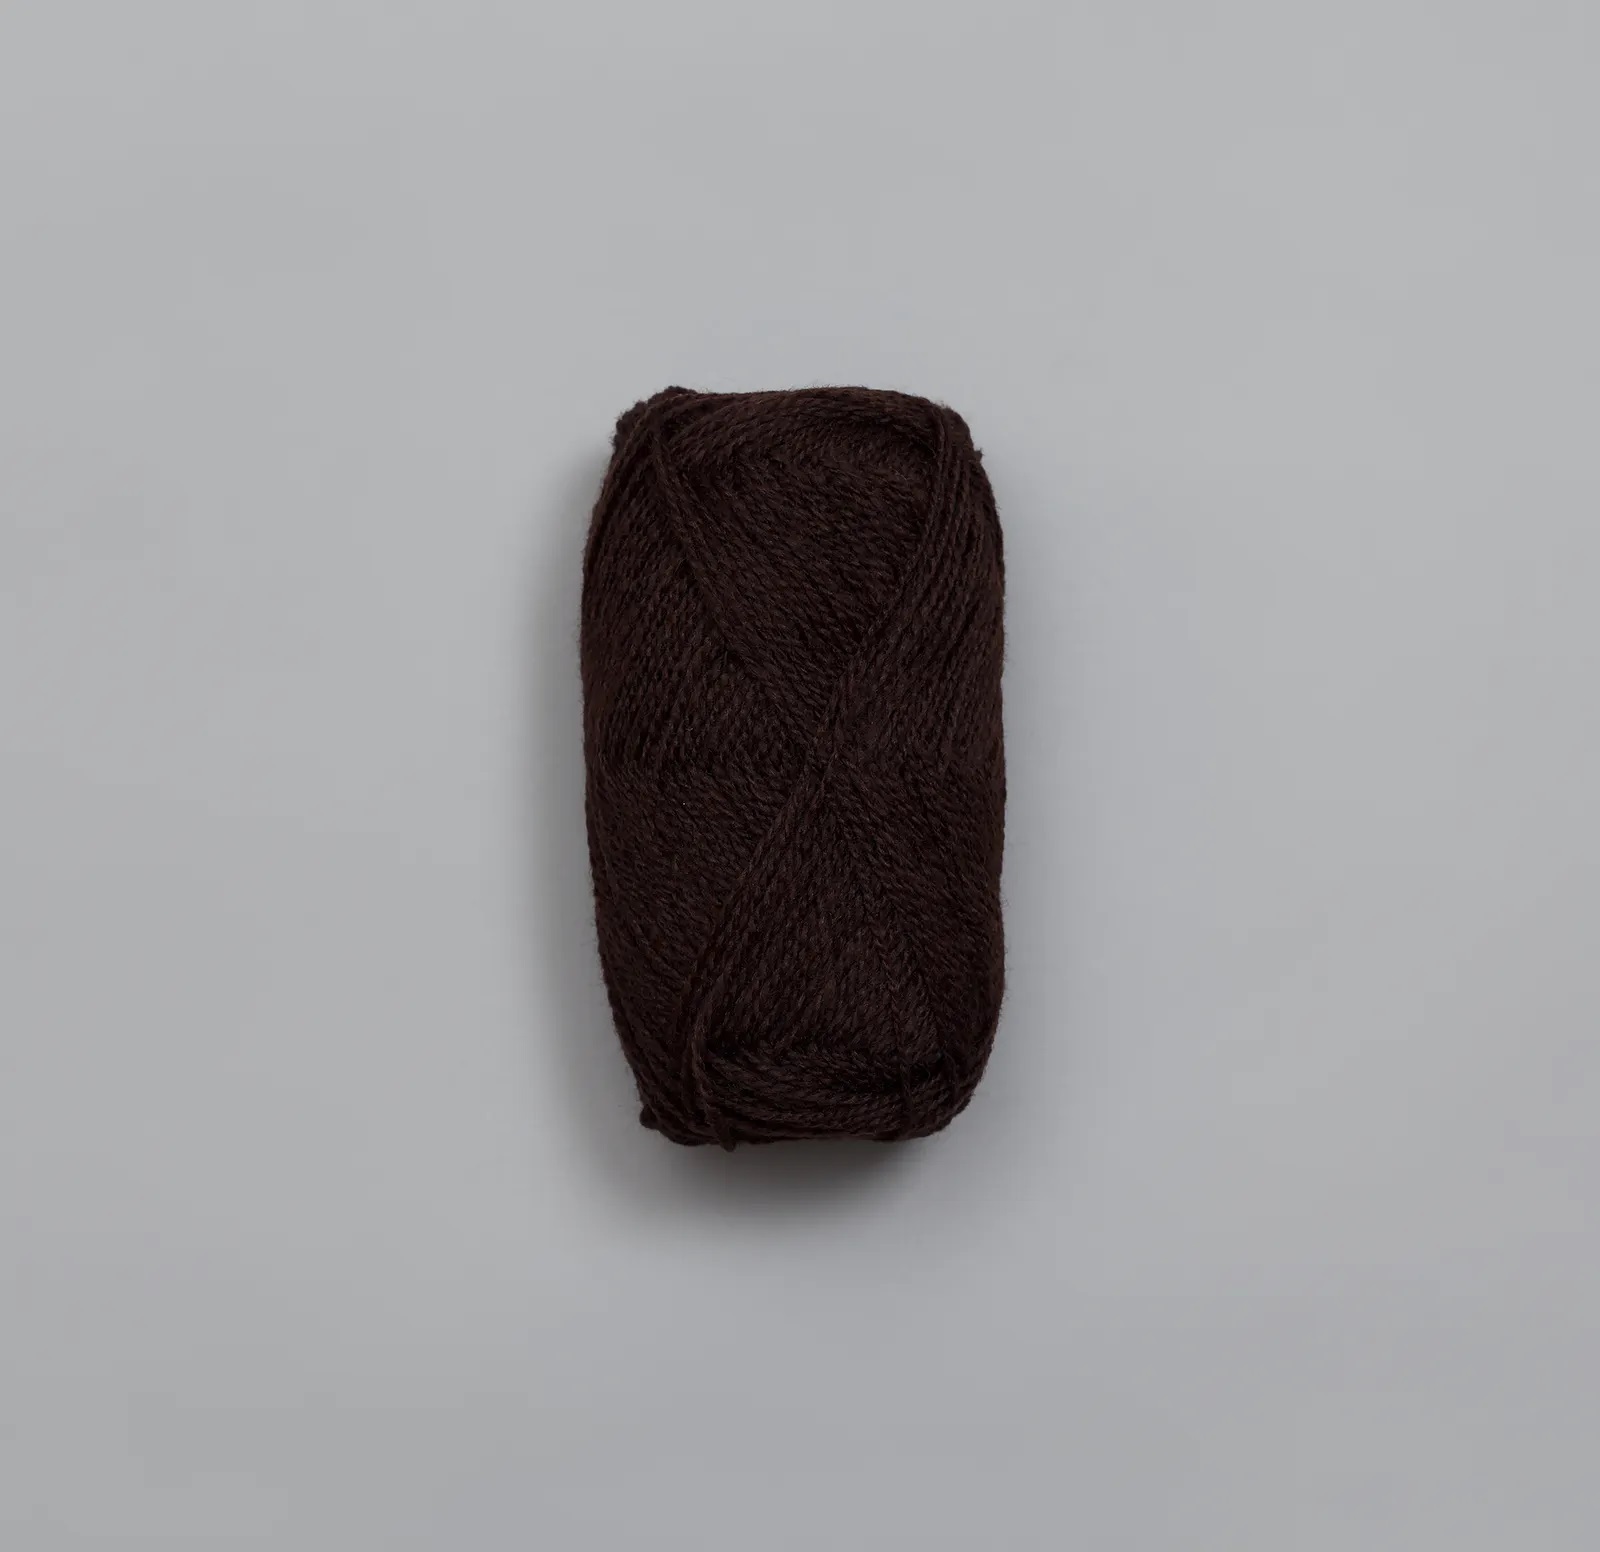 Finull-Mørk brun-422-Klintholm garn